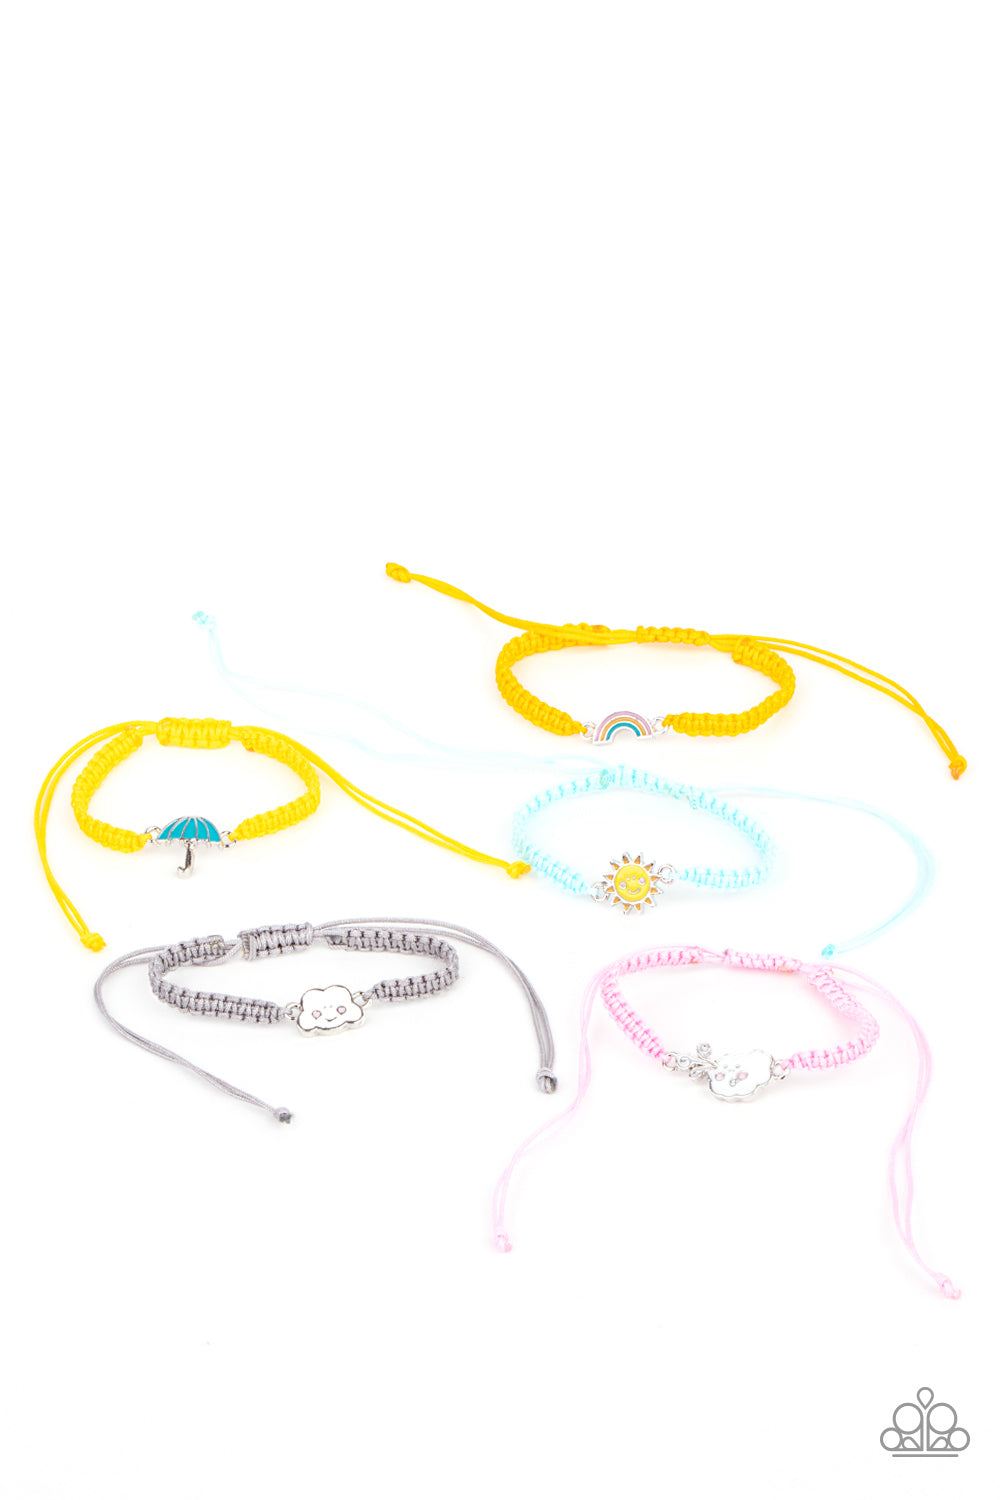 starlet-shimmer-bracelet-kit-2897-p9ss-mtxx-293xx